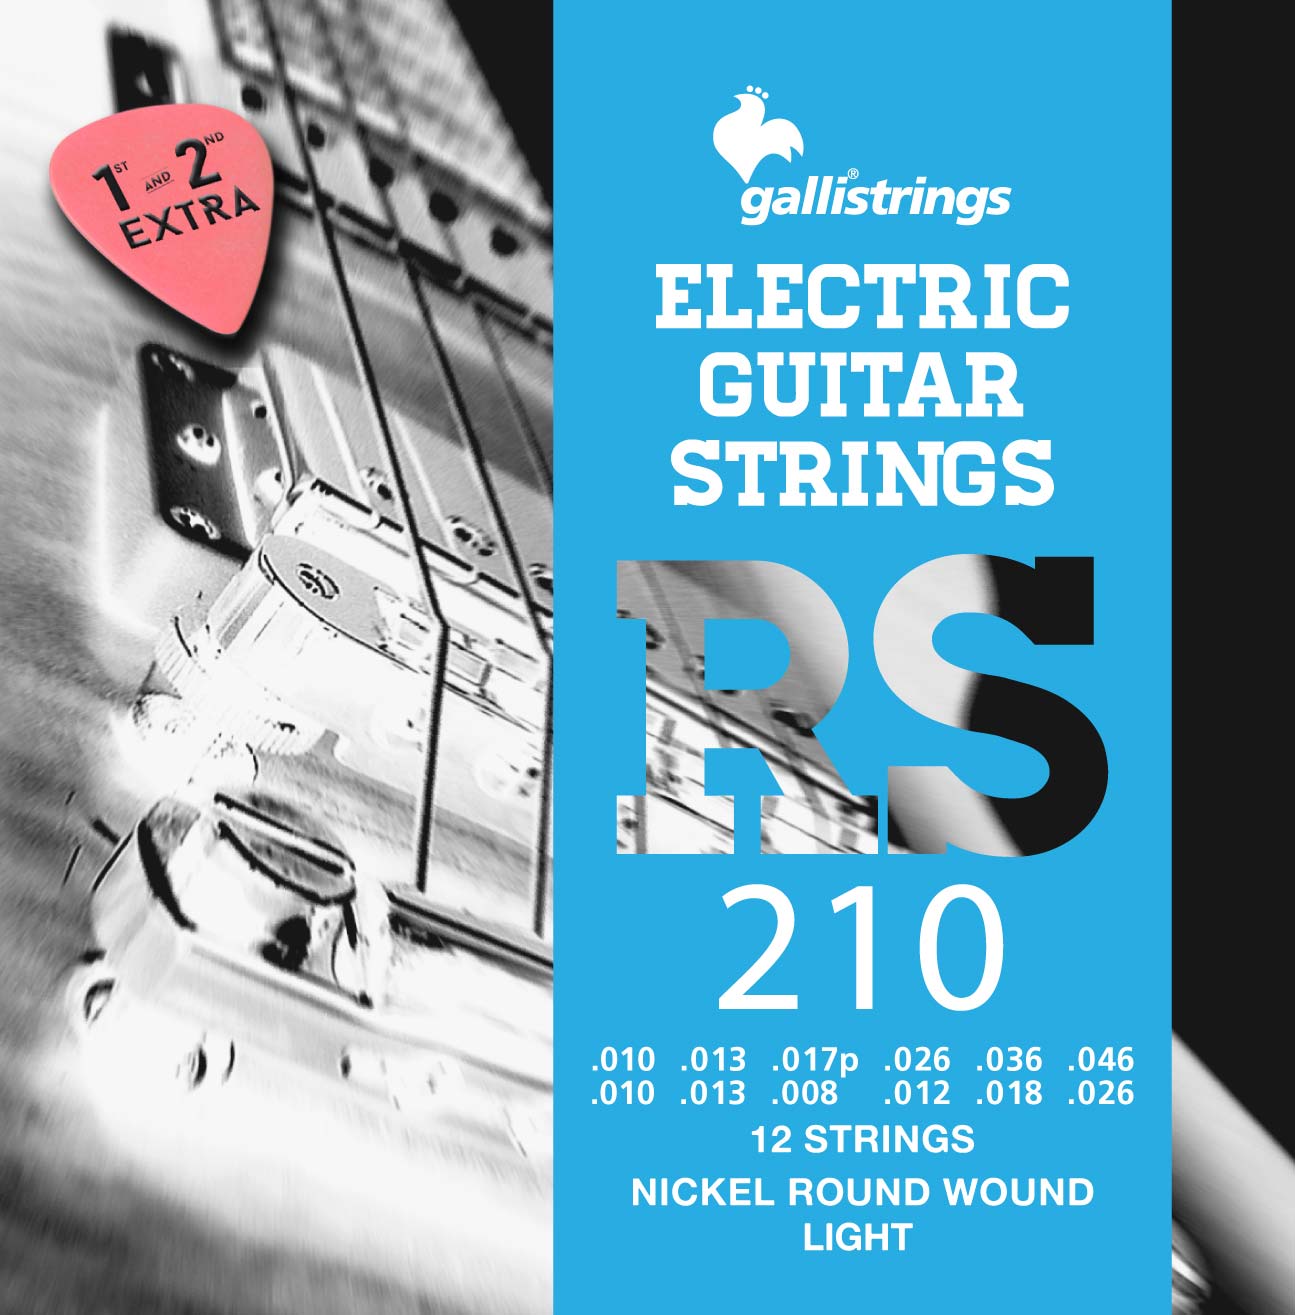 RS210-12 Strings